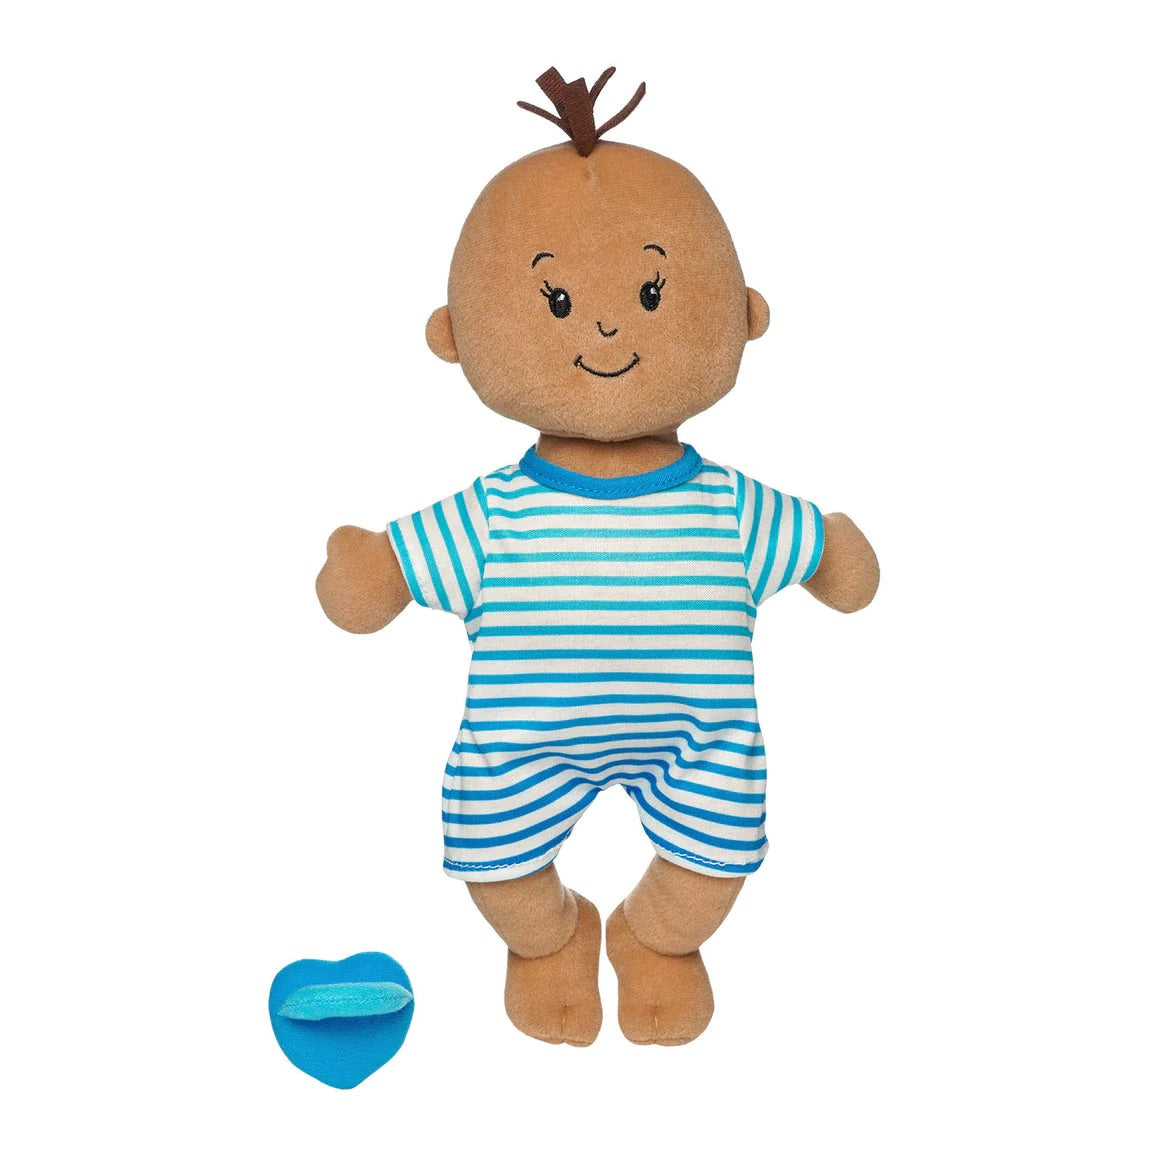 Wee Baby Stella Beige with Brown Tuft by Manhattan Toy #164270